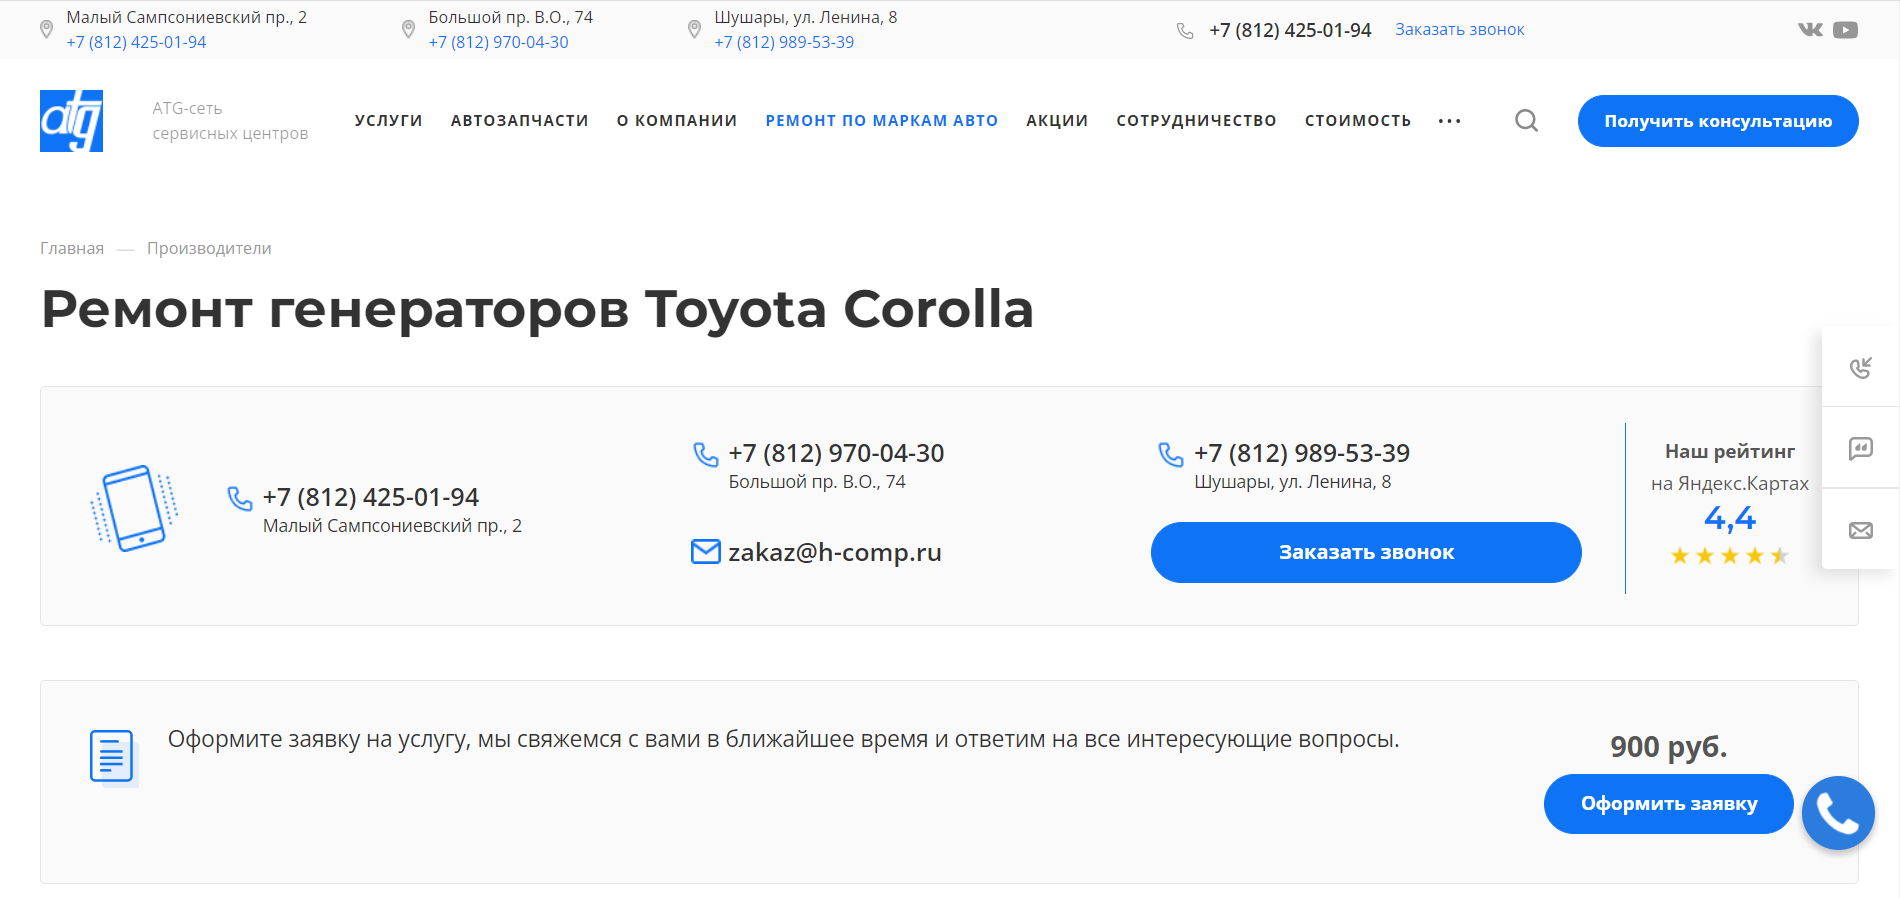 Ремонт генераторов Toyota Corolla